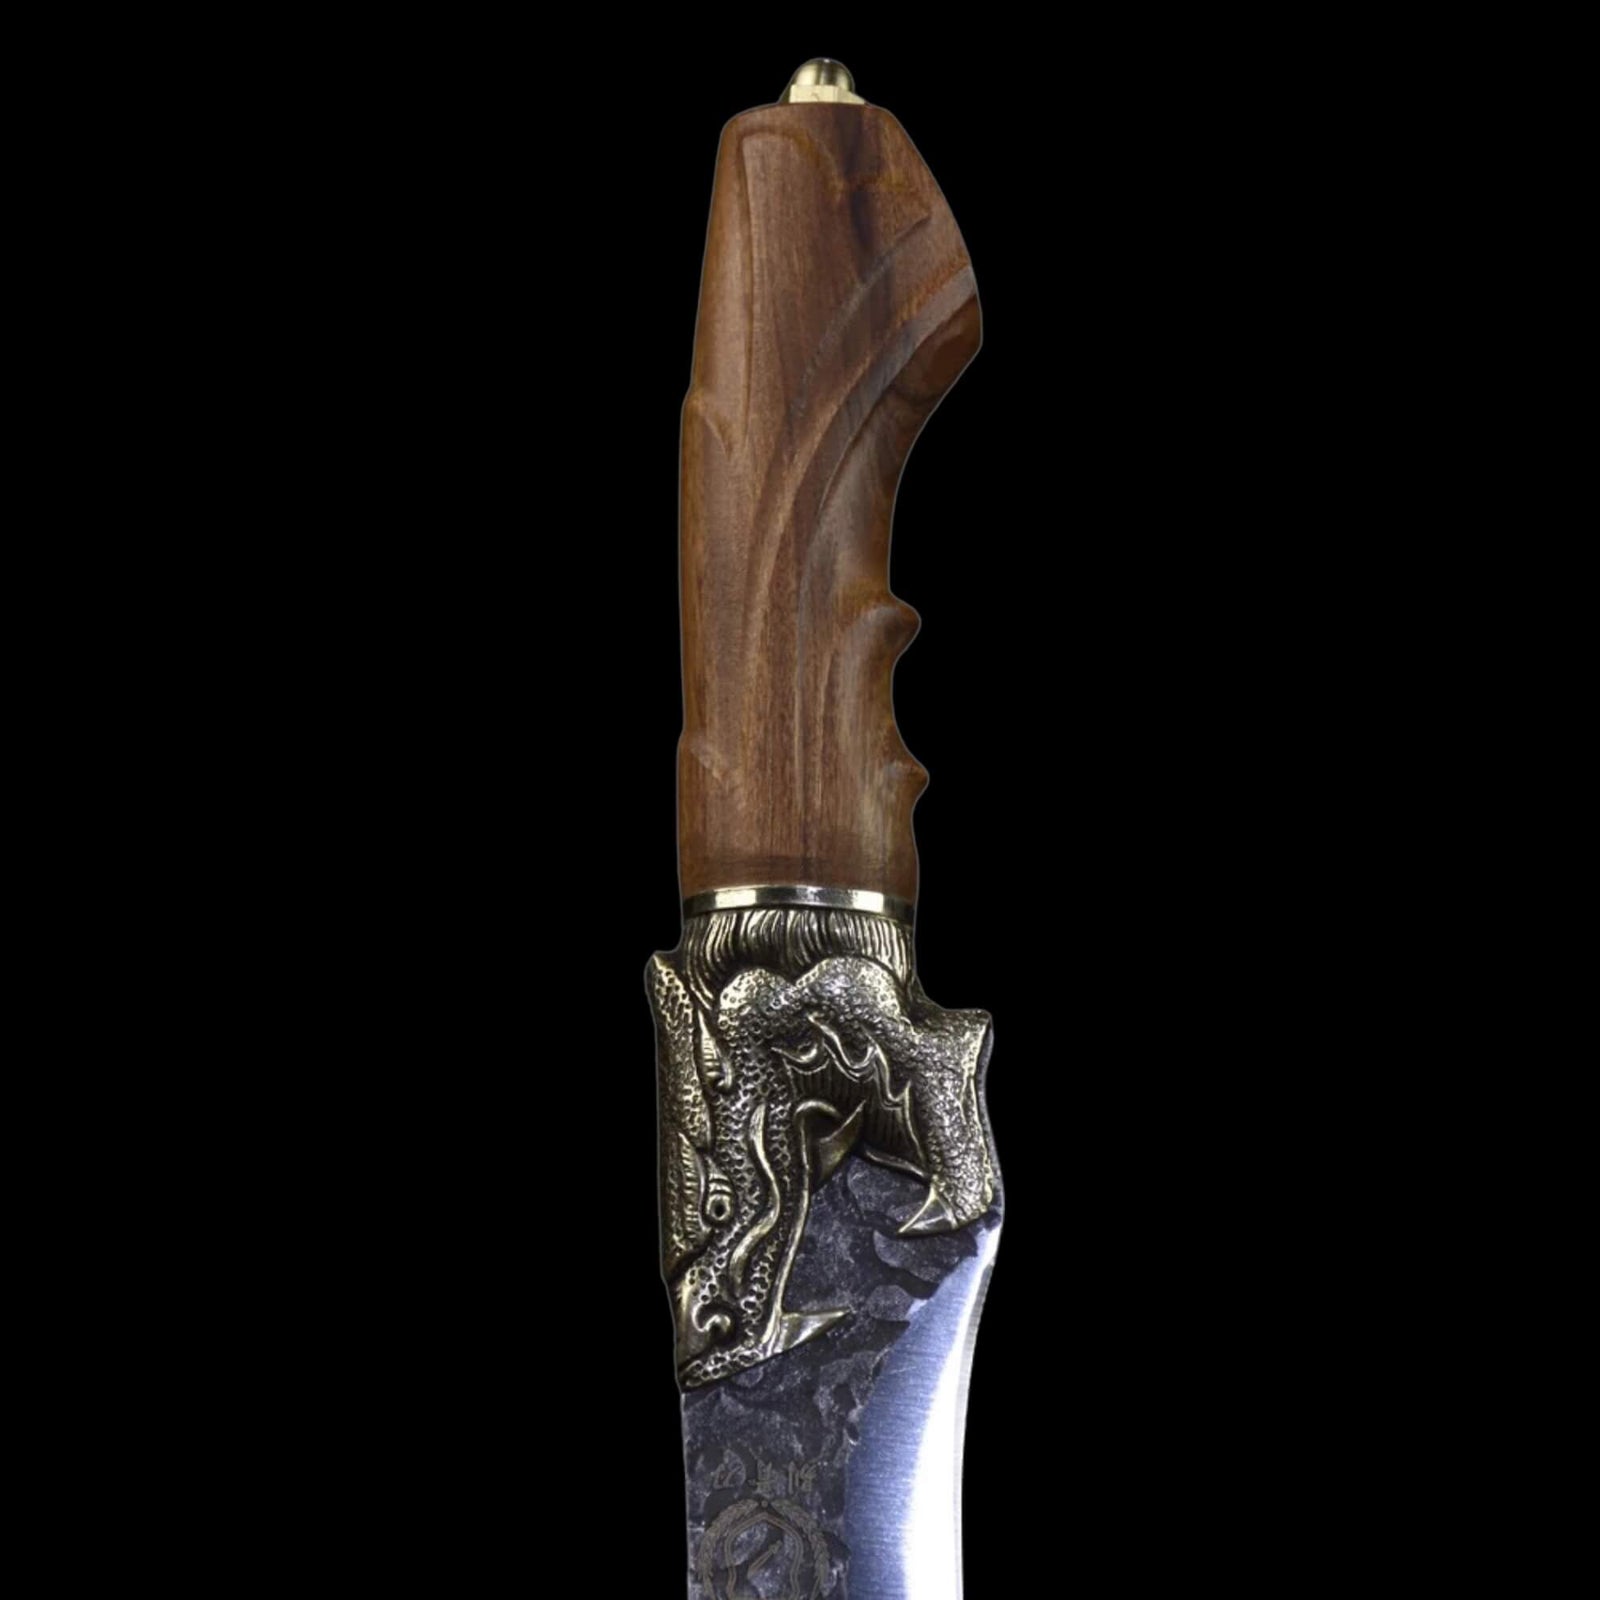 Serbian Clad Steel Knife - Odin's Treasures